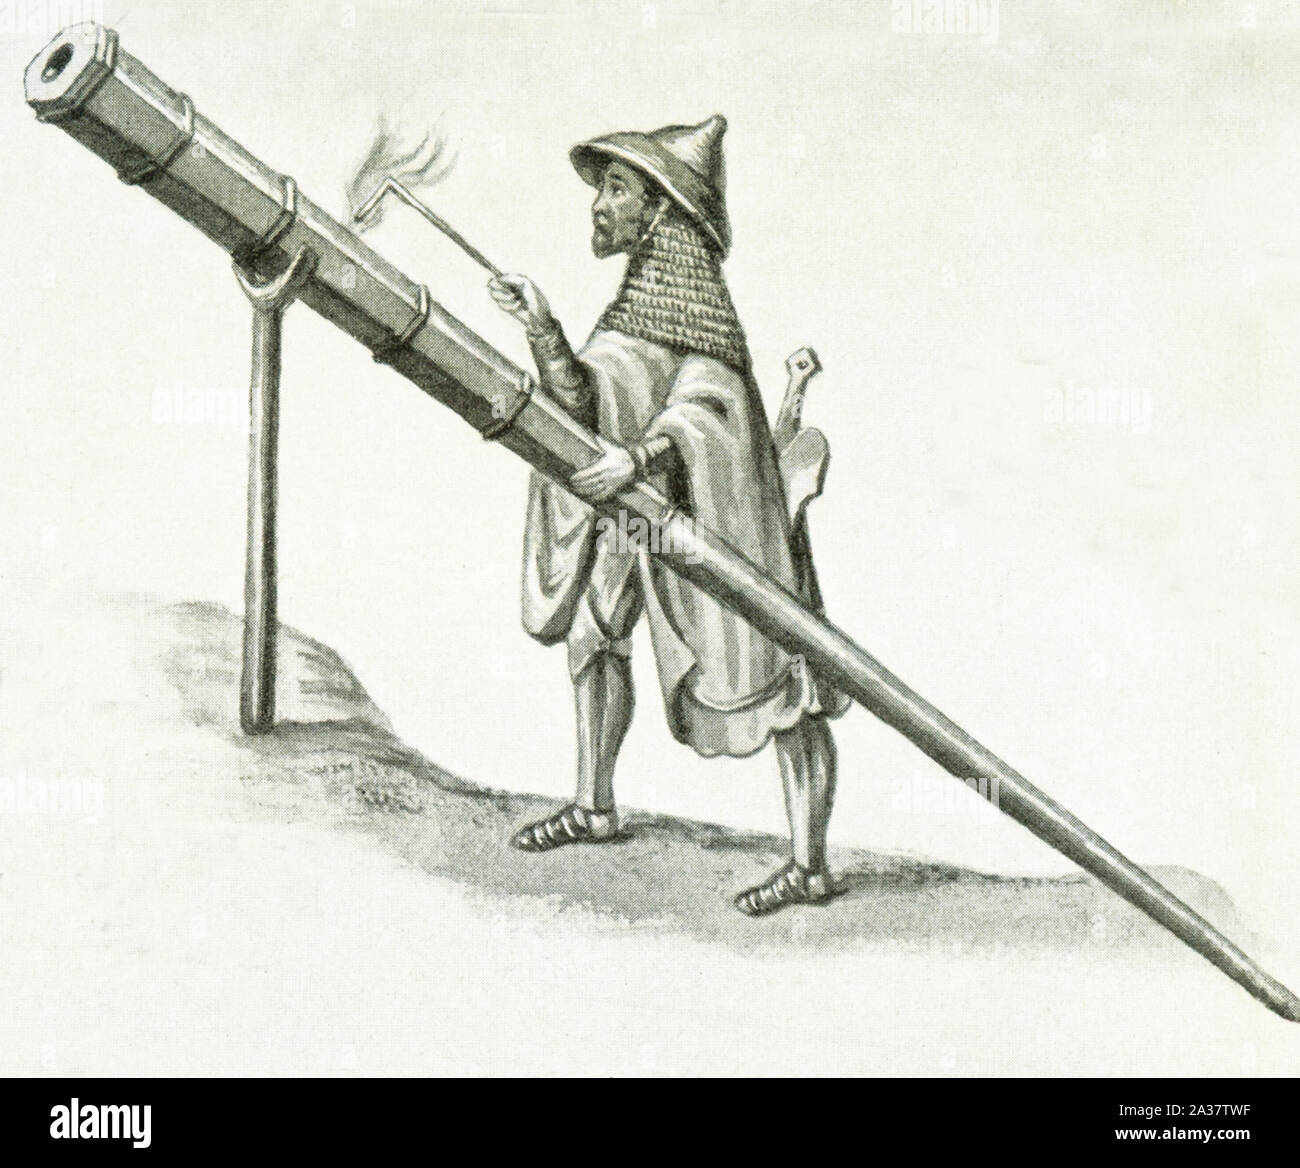 Cette image d'un pistolet qui remonte à environ 1405. Il est déclenché à partir d'un stand. Il a été dit et illustré dans l'ouvrage de Konrad Kyeser Bellifortis publié c. 1405. Banque D'Images